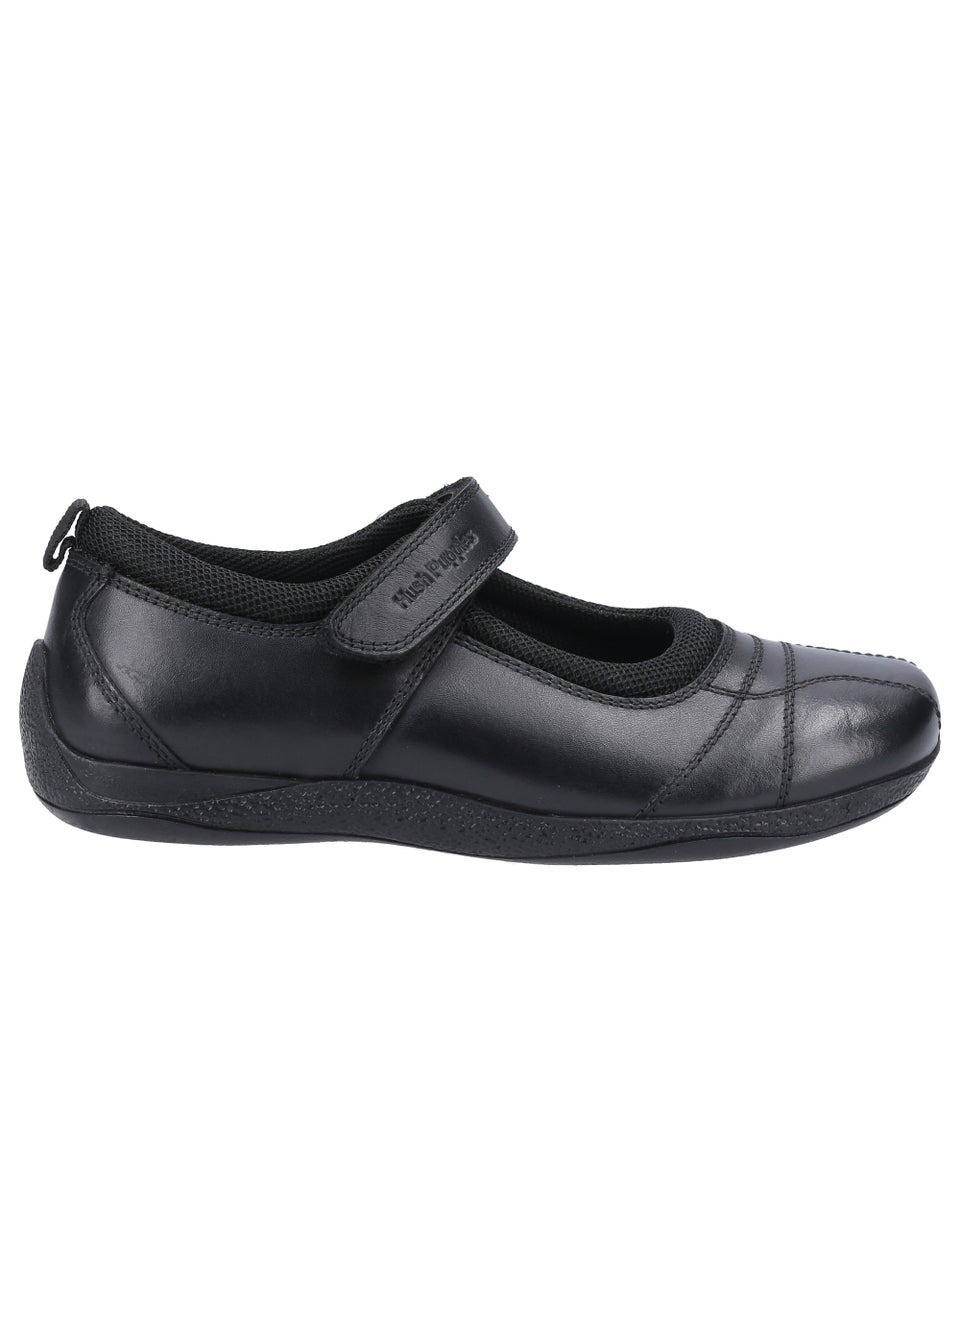 Черные школьные туфли для девочек Hush Puppies Junior (до 10 лет – от 2 лет) кроссовки hush puppies felix perf black